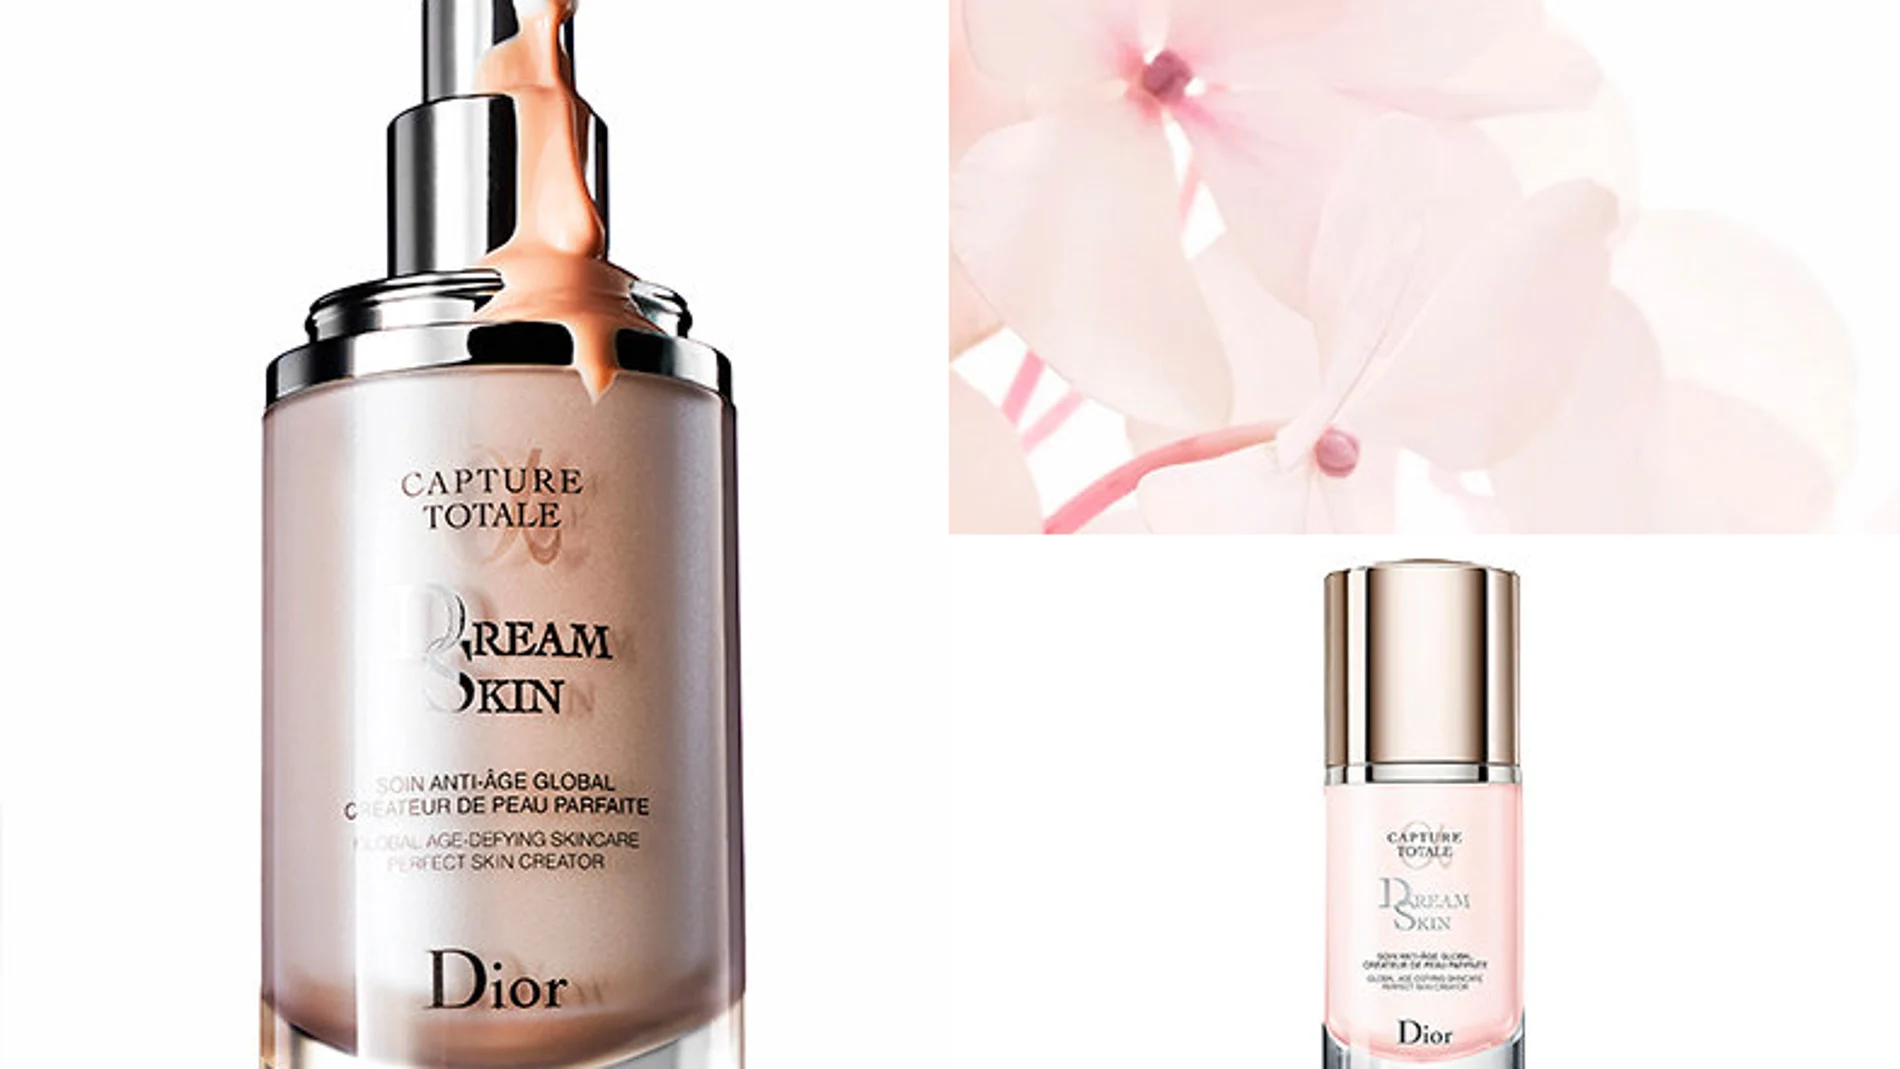 Flor de longoza, para el tratamiento Dreamskin Capture Total de Christian Dior,